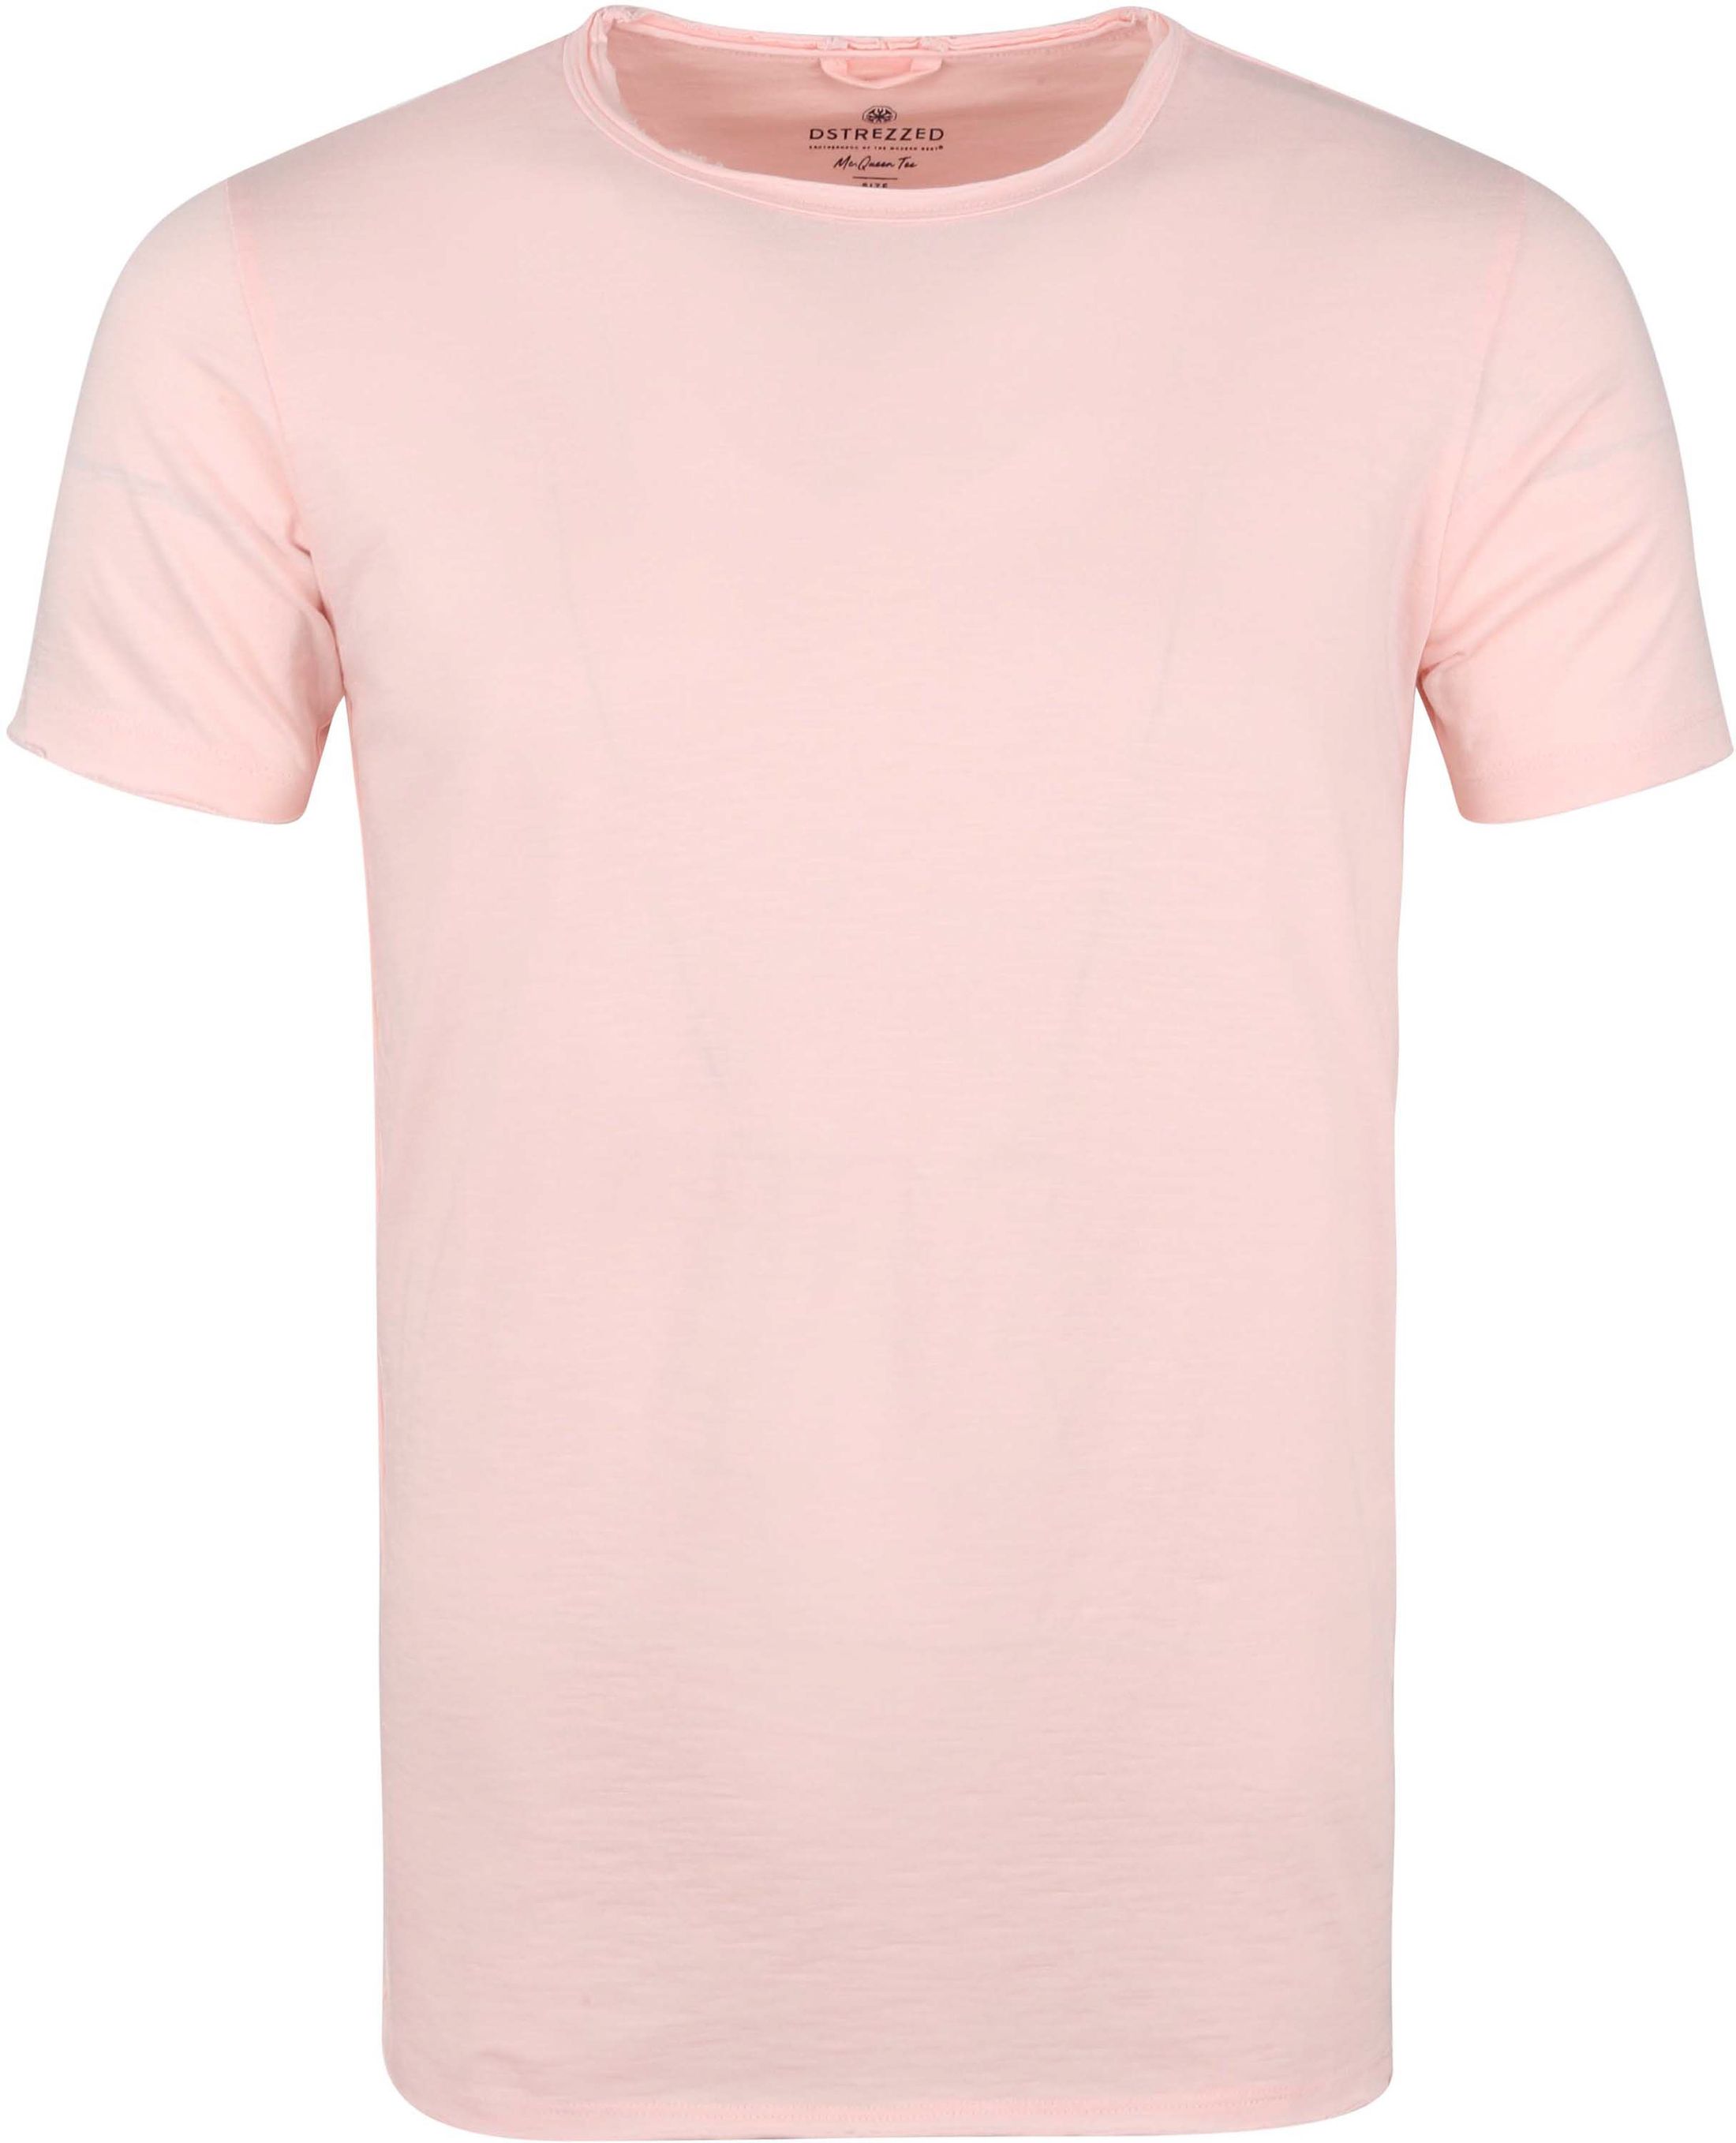 Dstrezzed Mc Queen T Shirt Pink size L